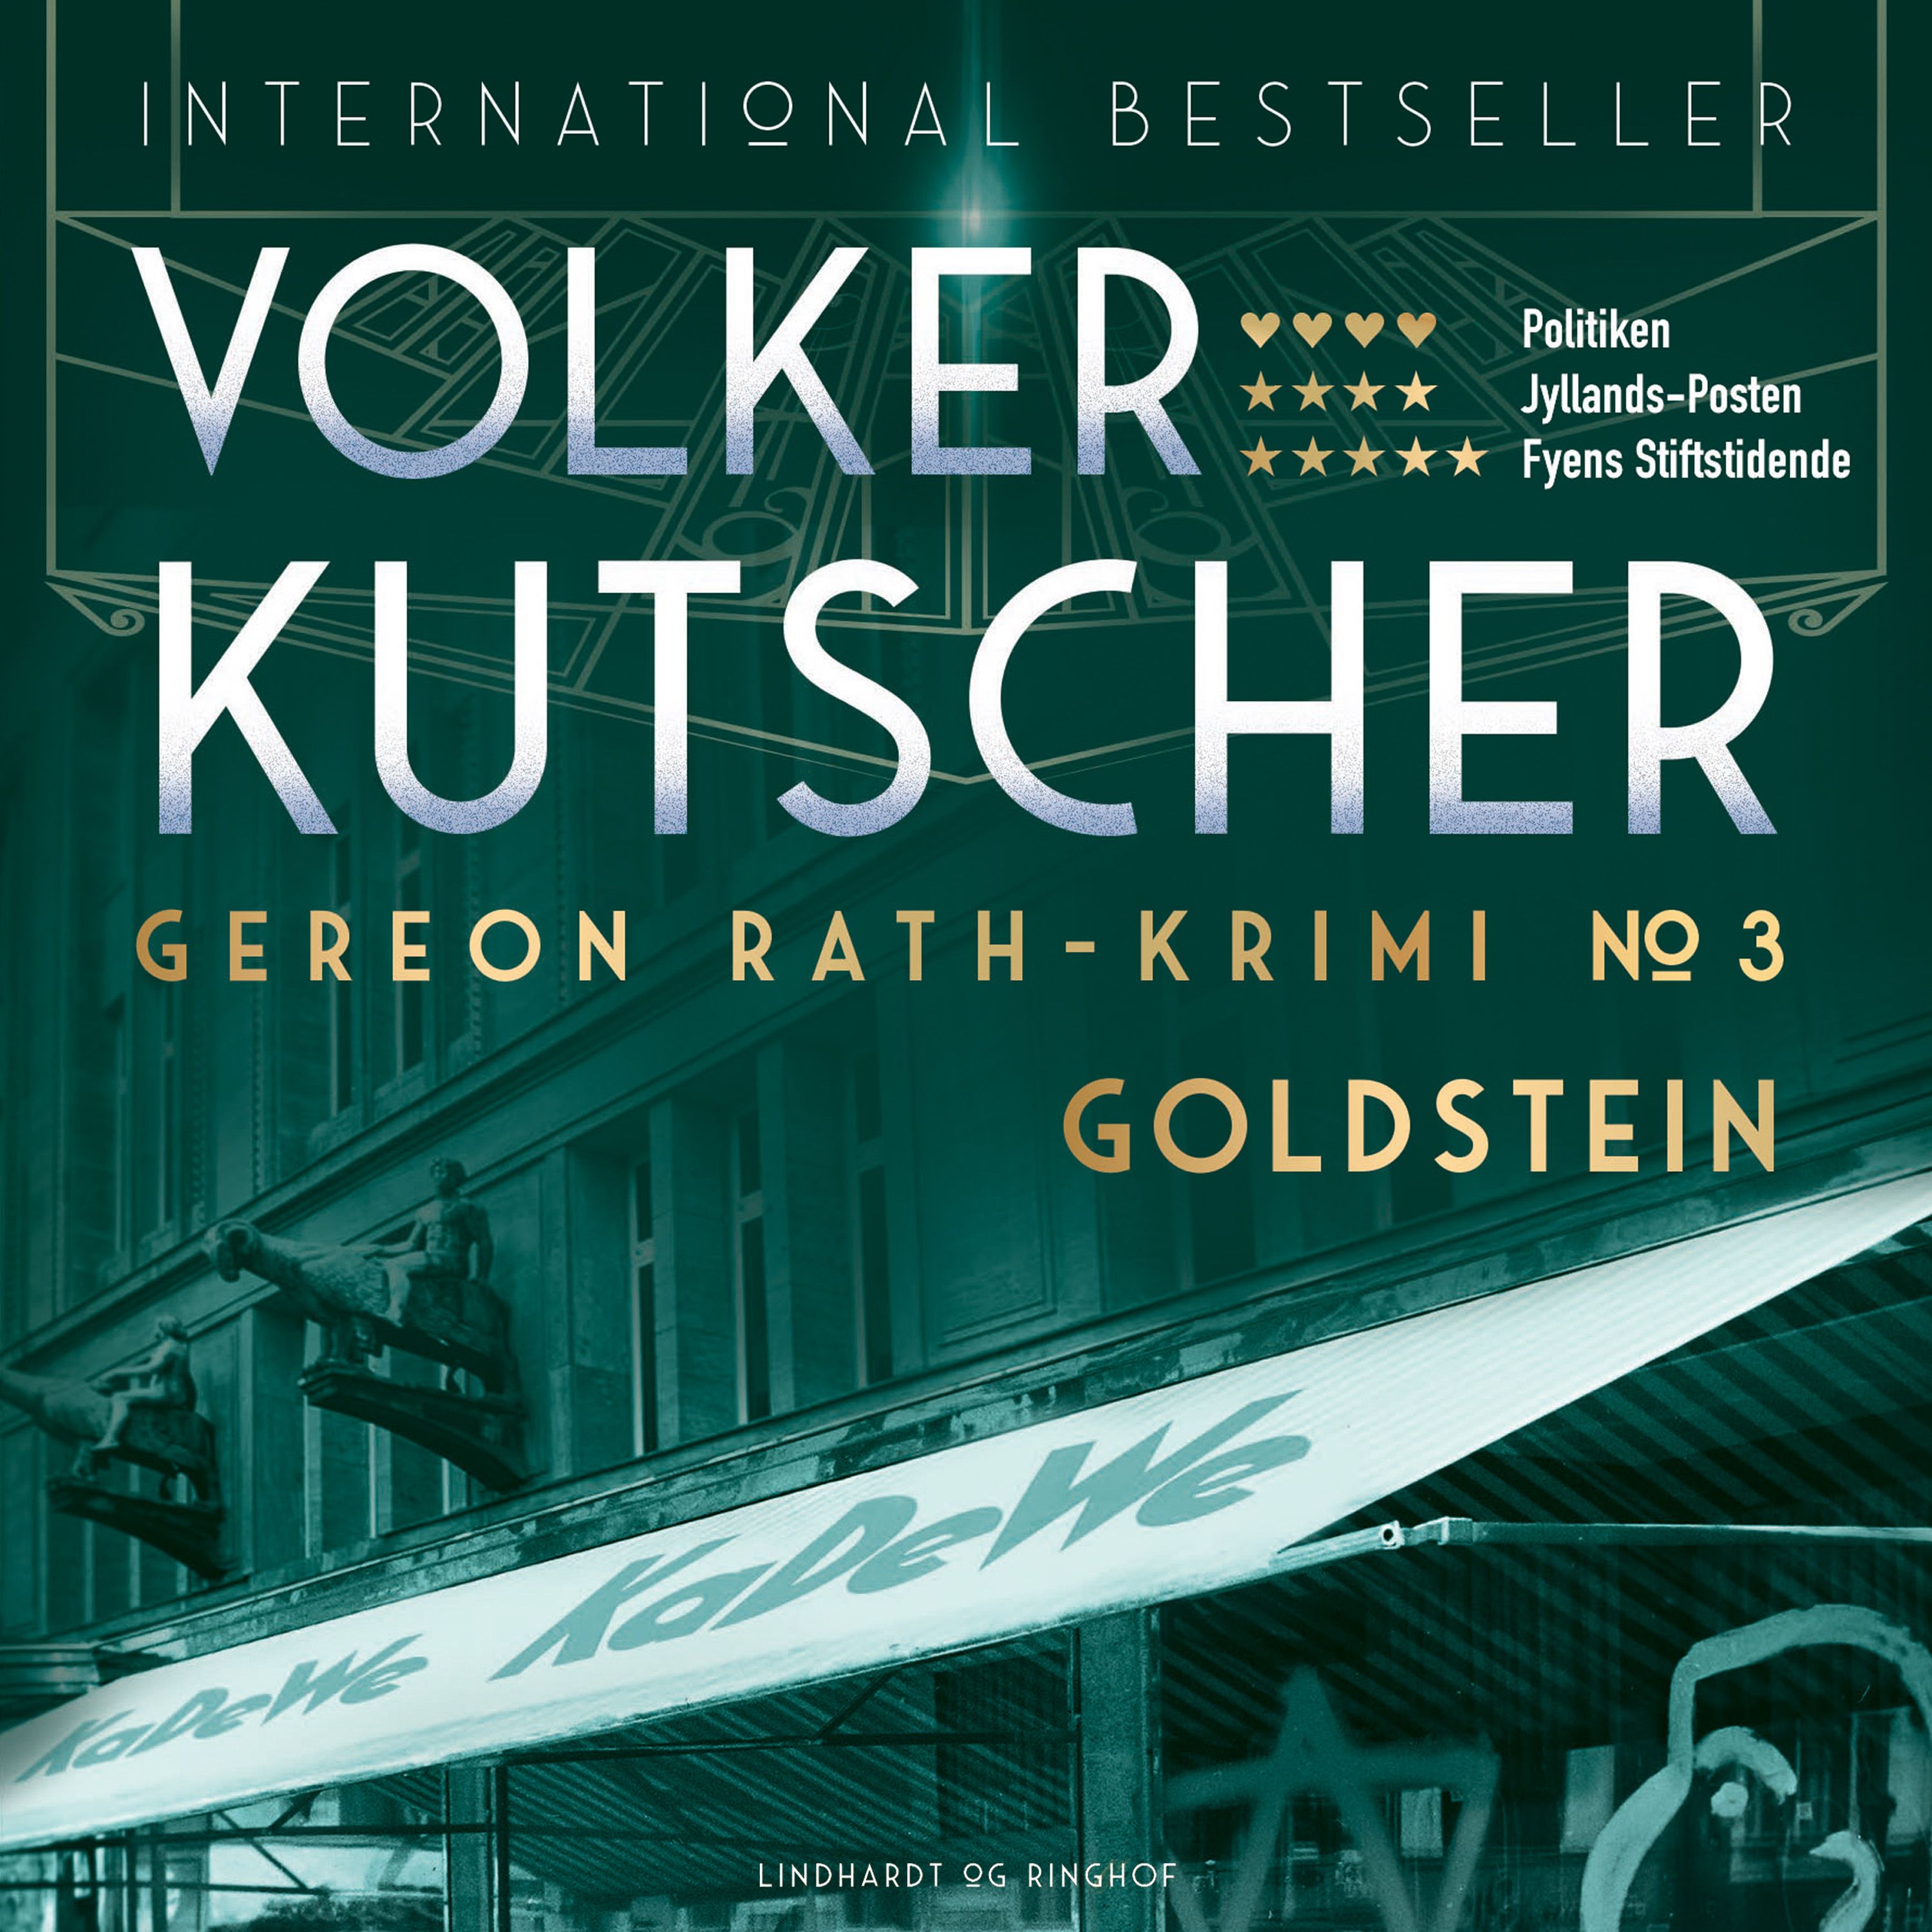 Goldstein, lydbog af Volker Kutscher